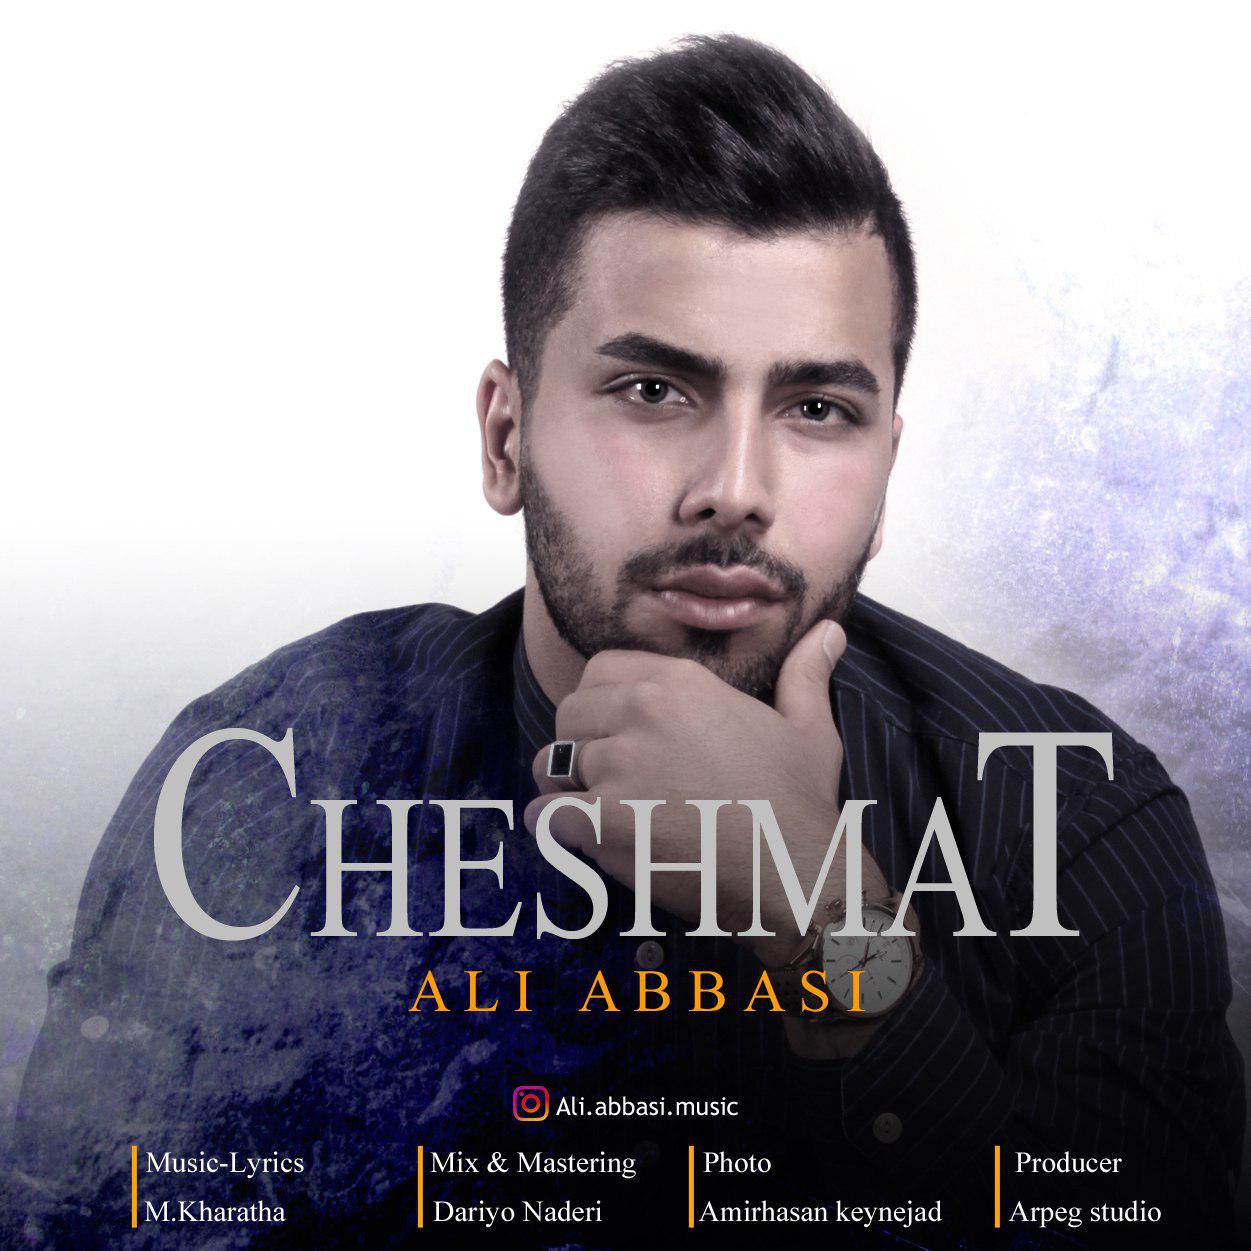  دانلود آهنگ جدید علی عباسی - چشمات | Download New Music By Ali Abbasi - Cheshmat